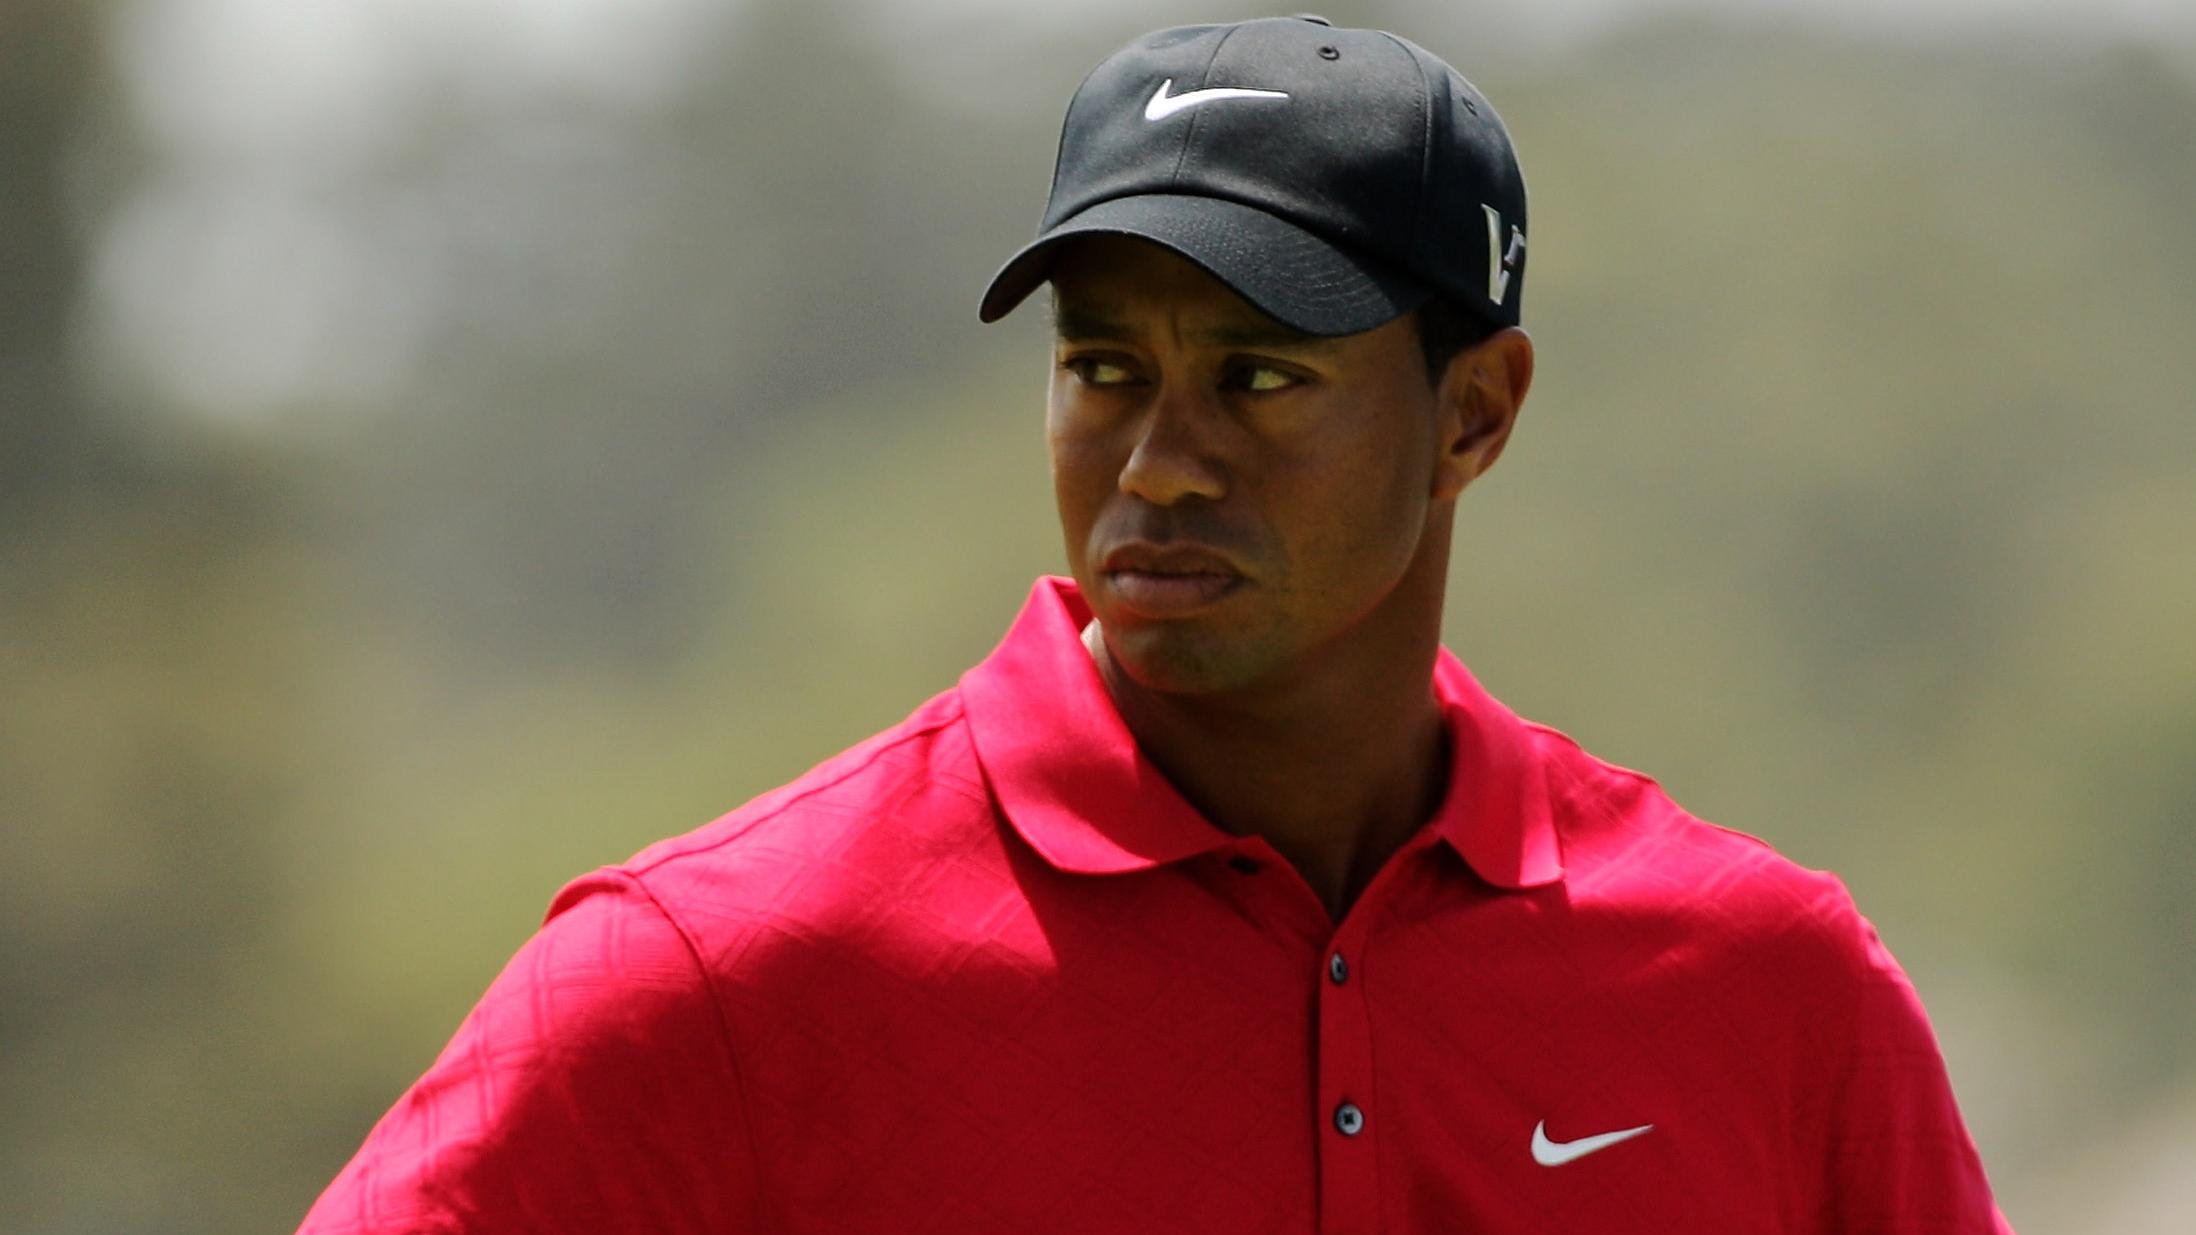 Kto chce obejrzeć sex-taśmę Tigera Woodsa? afbeelding